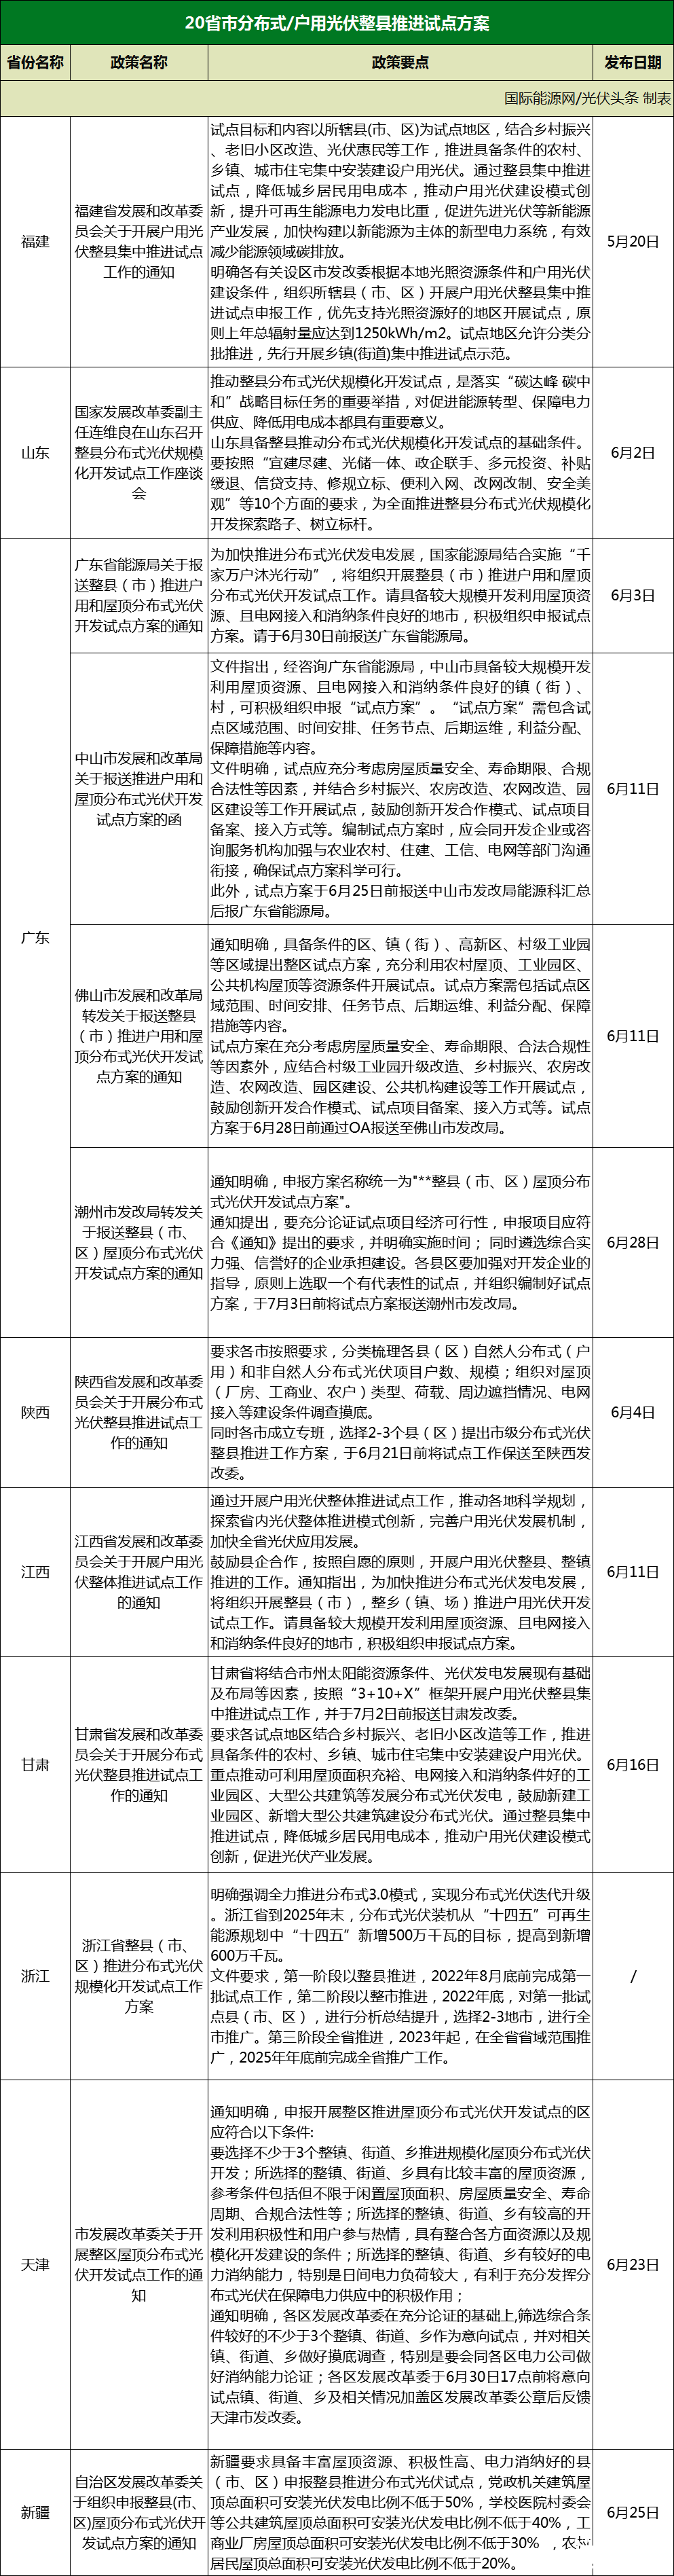 新增天津、宁夏、湖南、青海海西州！分布式光伏整县推进进行中！